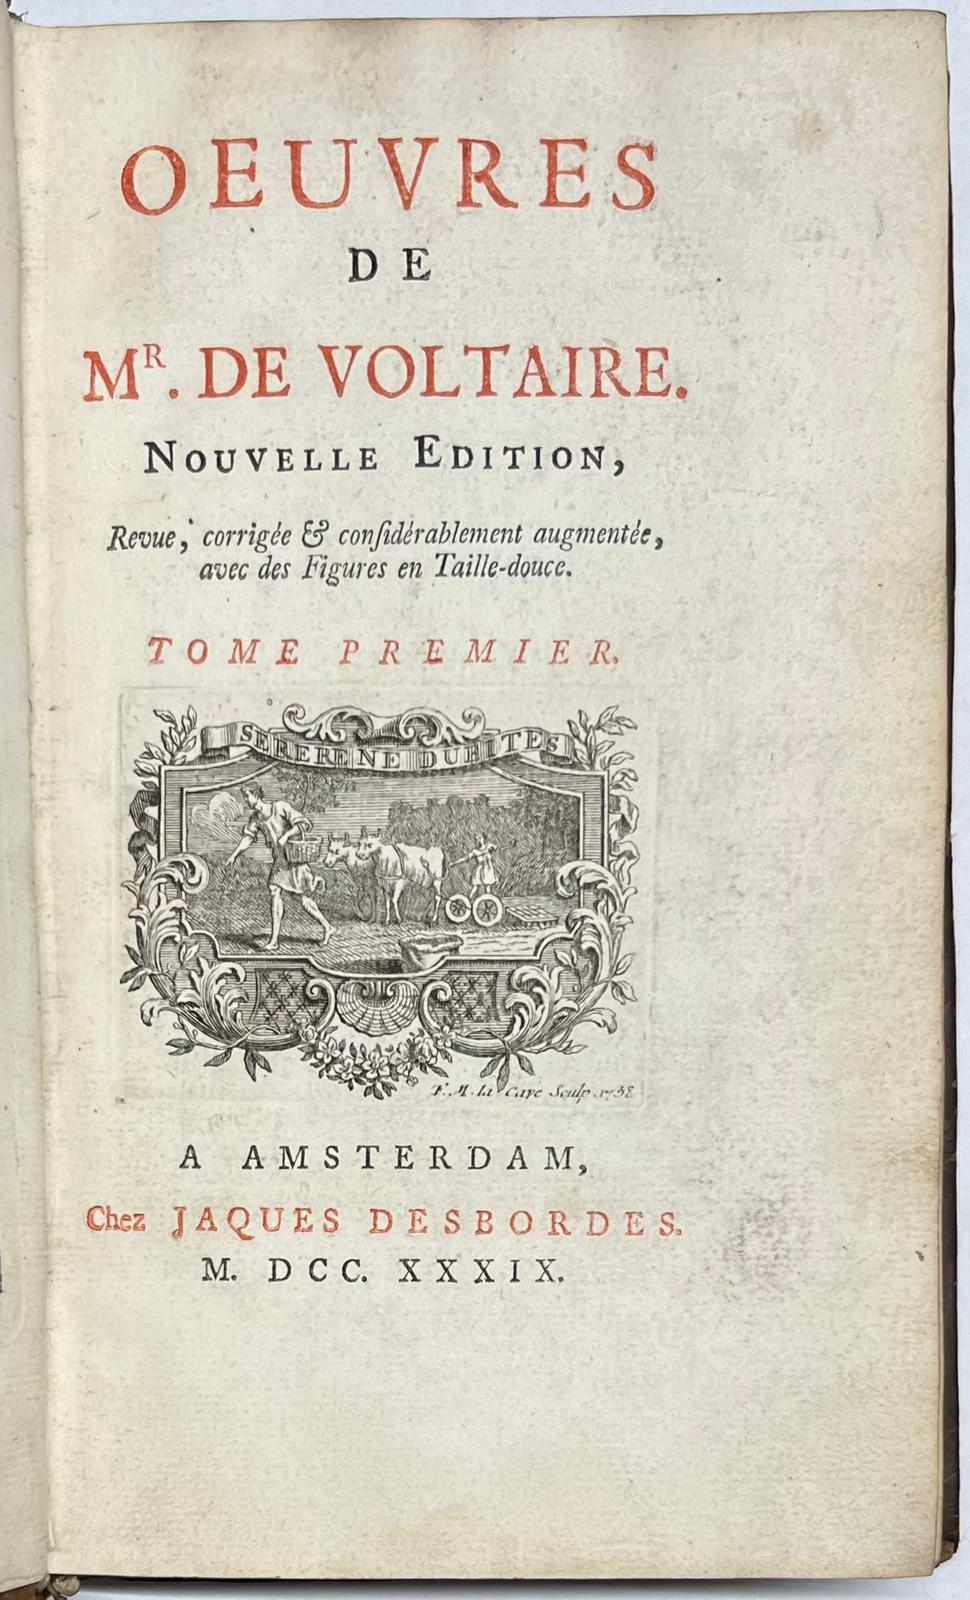 Voltaire, 1739, Enlightenment | Oeuvres de Mr. De Voltaire. Nouvelle Edition, Revue, corrigée & considérablement augmentée, avec des Figues en Taille-douce. Amsterdam, Chez Jacques Desbordes, 1739, 4 vols.